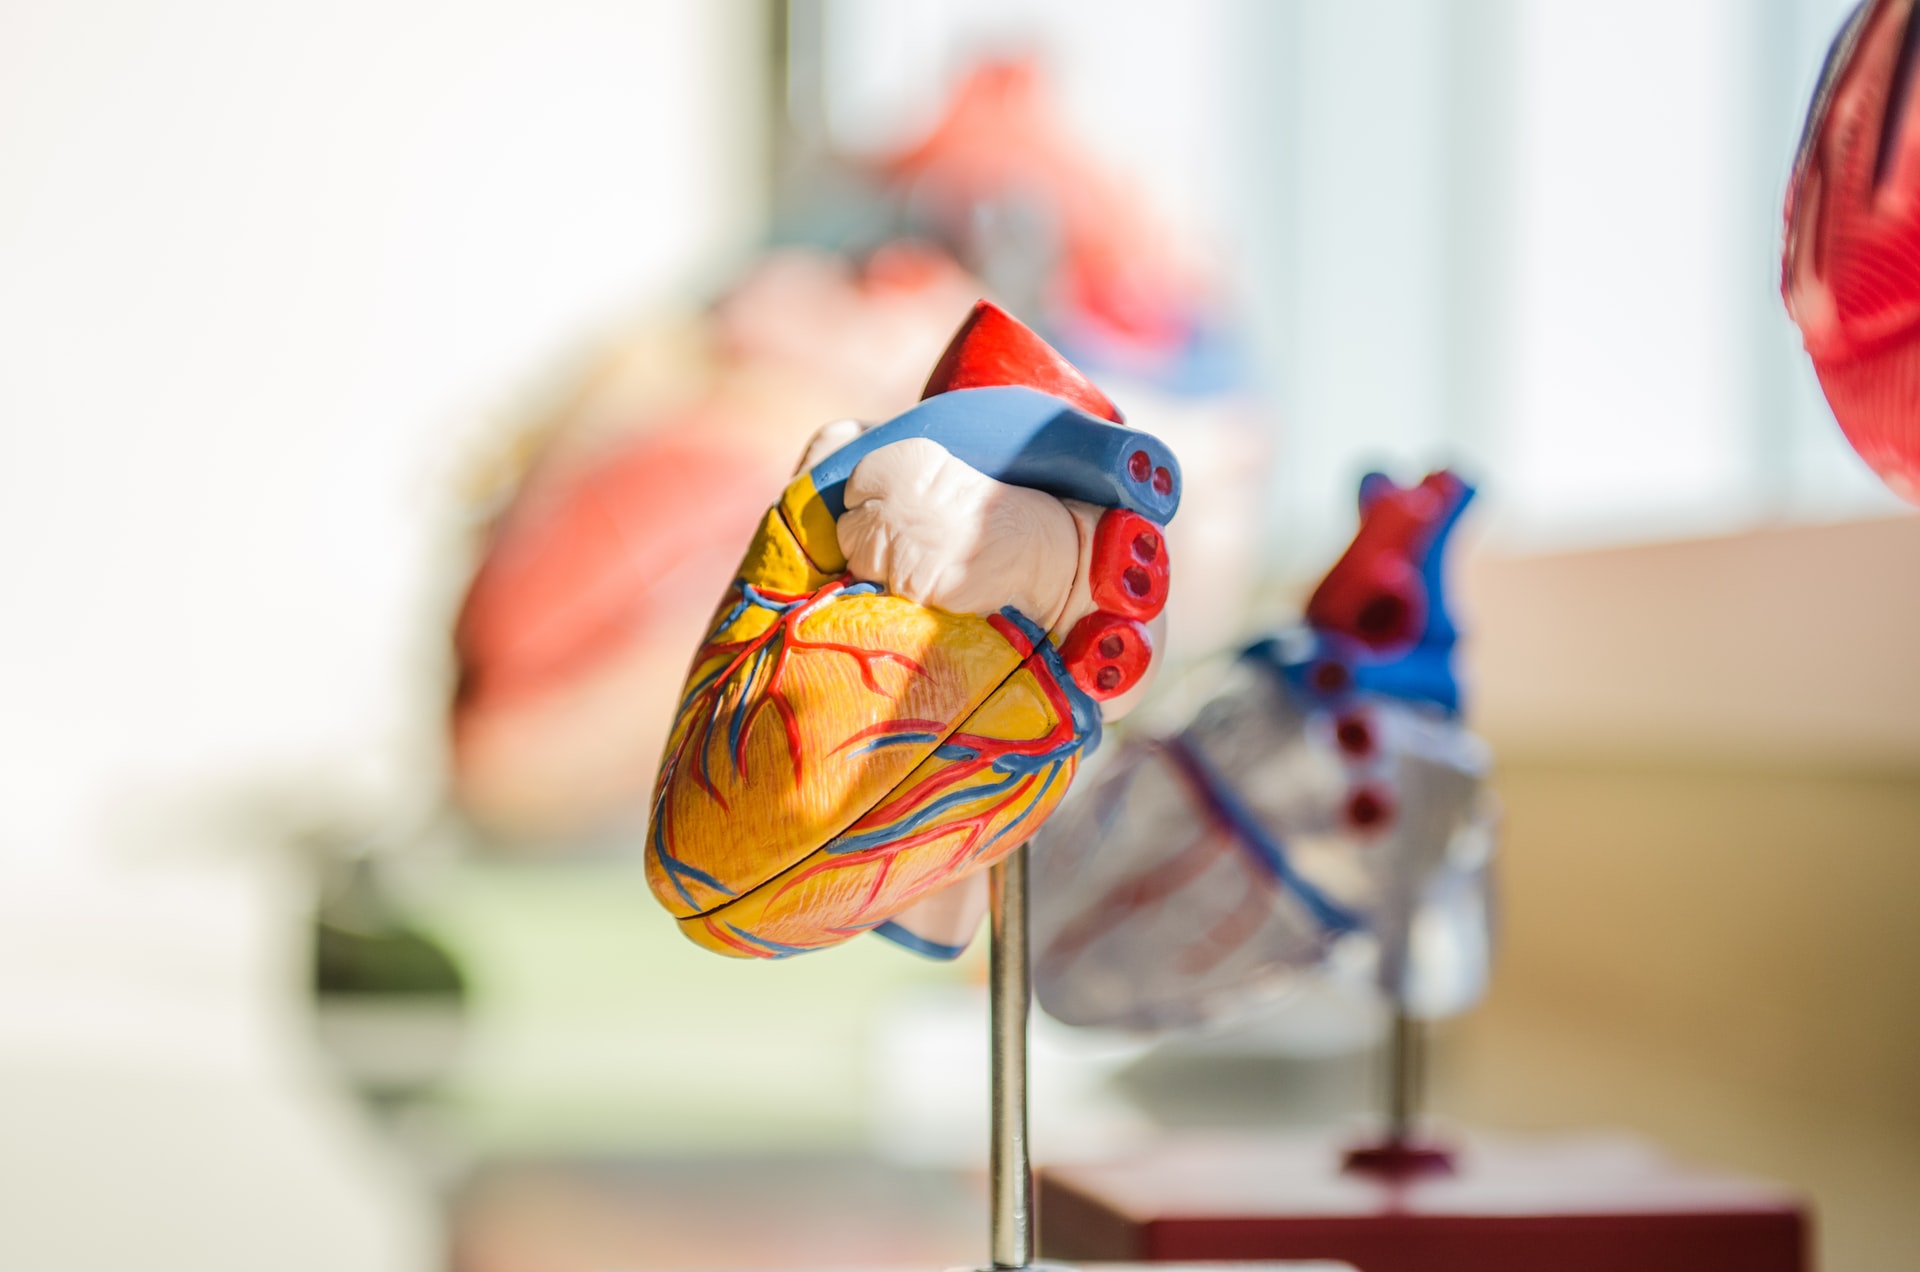 Scientific Heart Prop